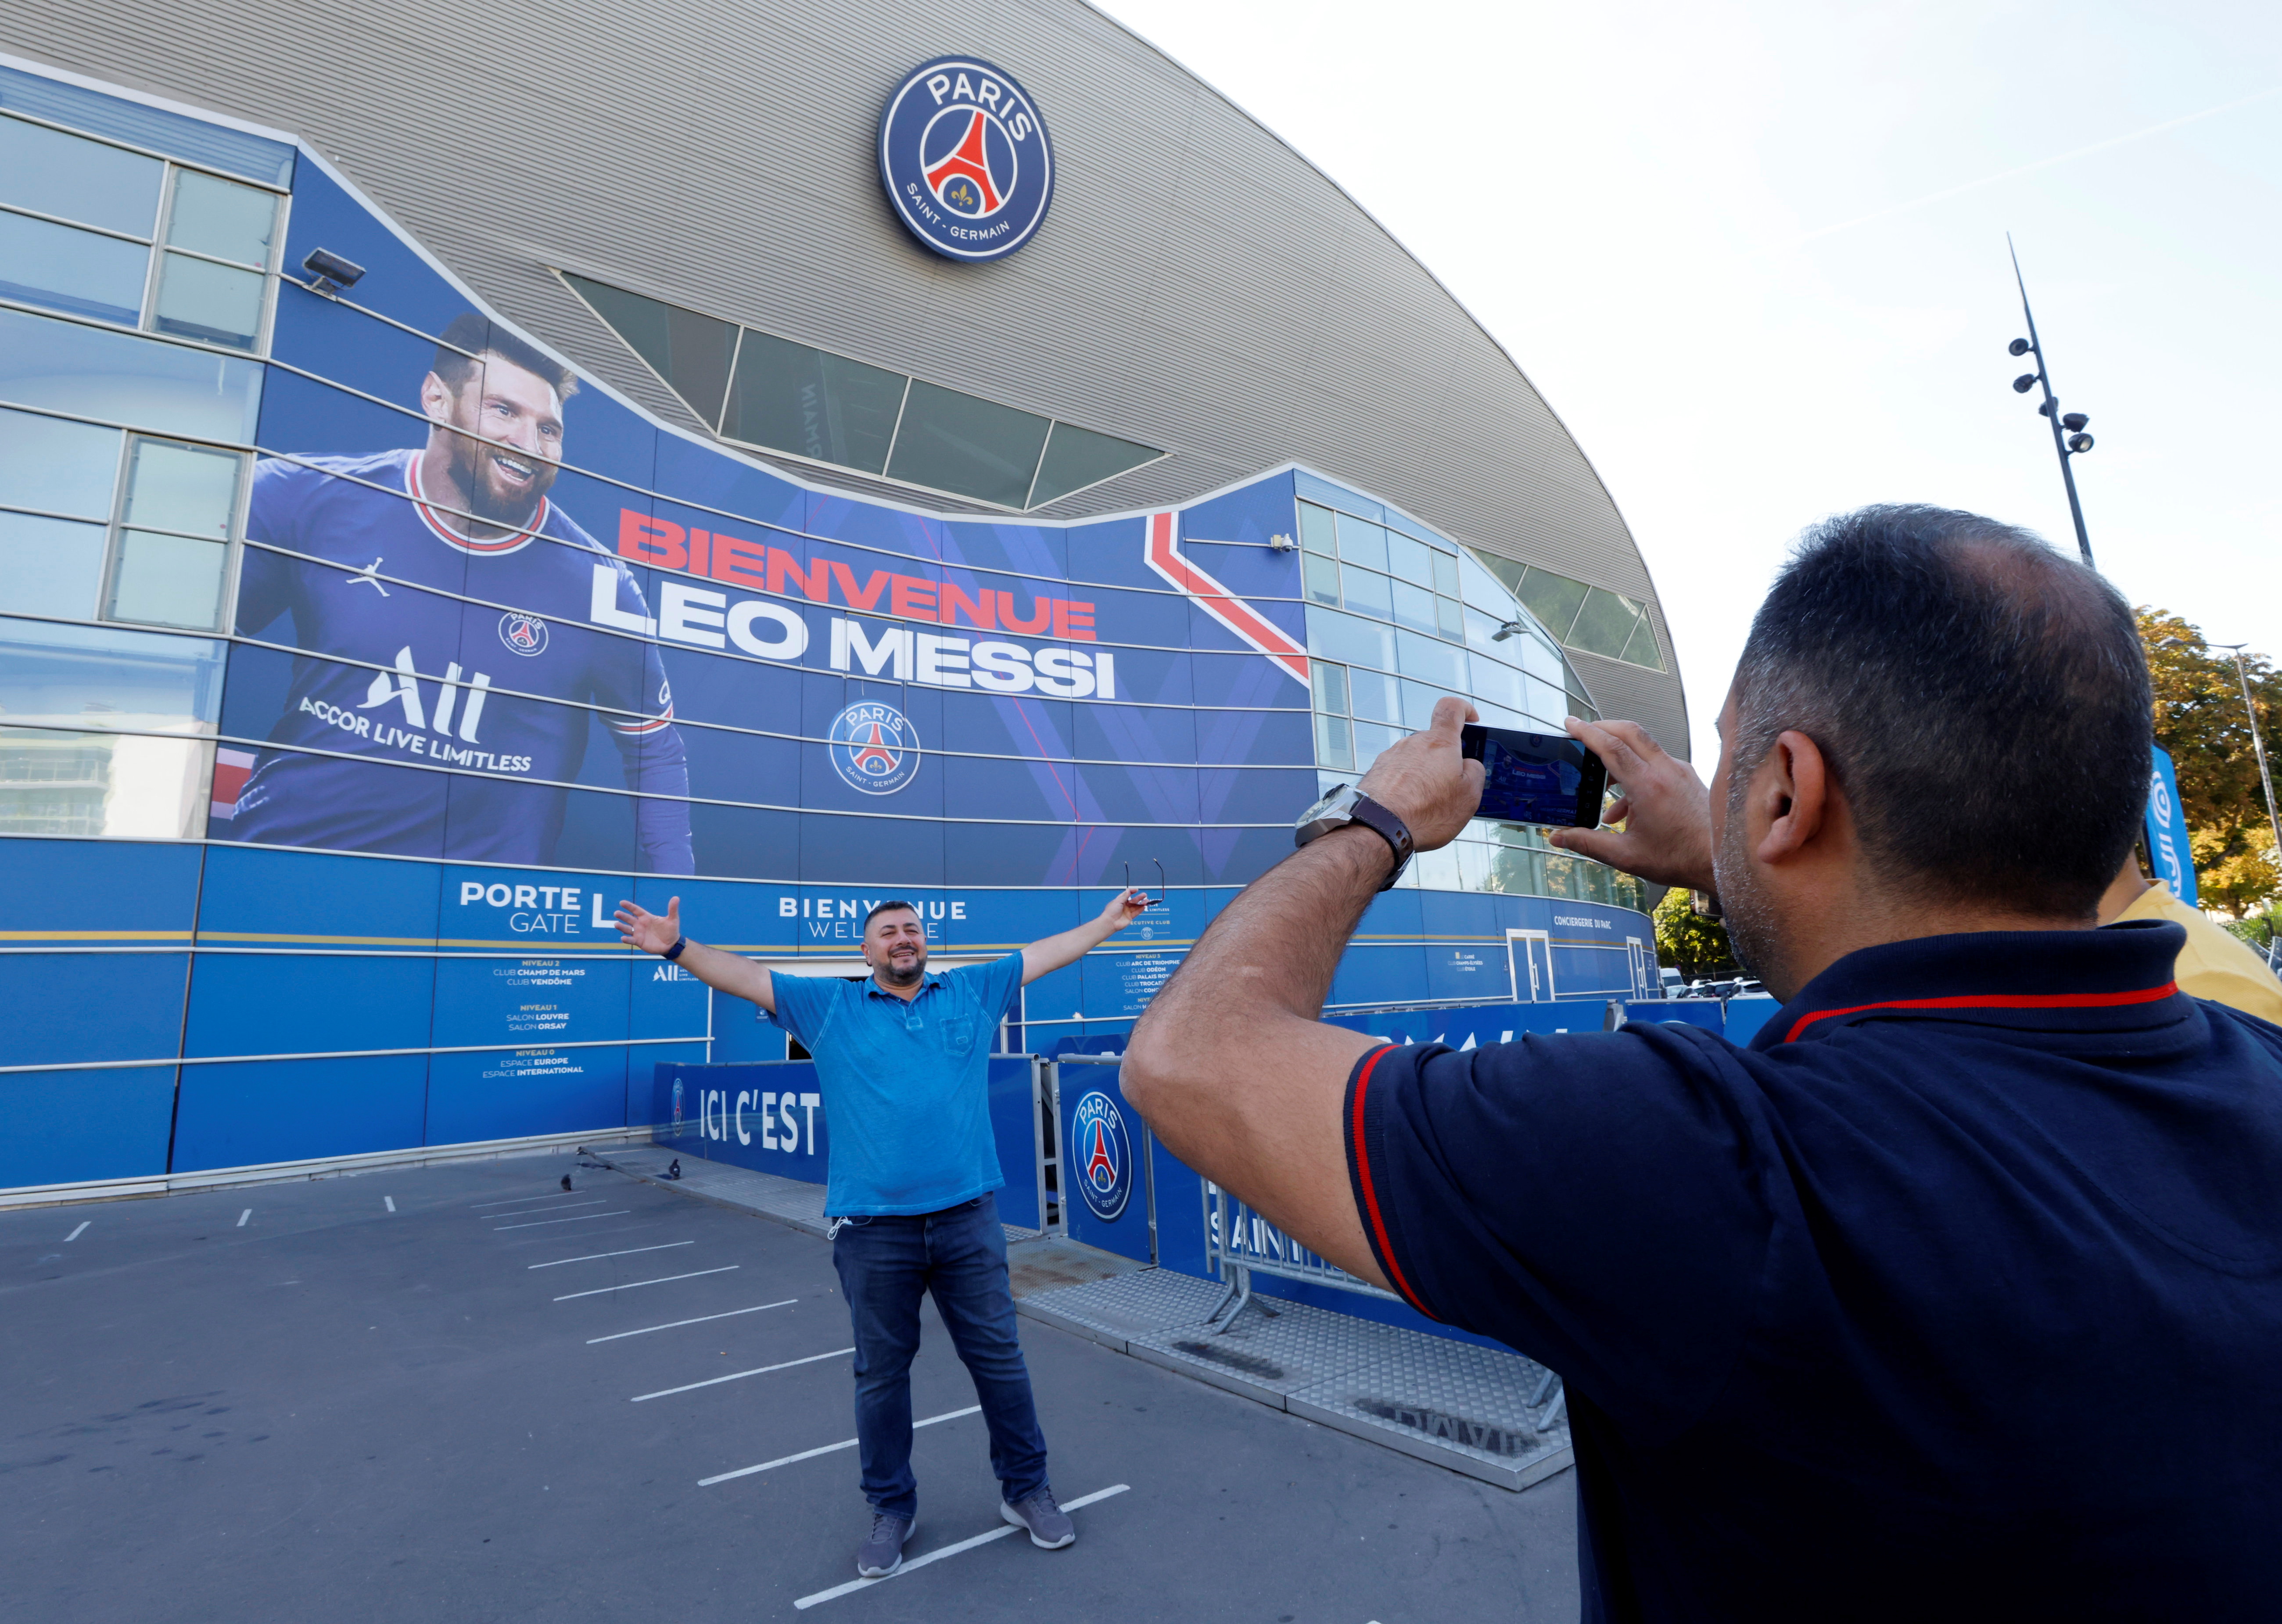 El Paris Saint Germain ha sido el club más castigado por el Fair Play financiero de la UEFA (Foto: REUTERS)